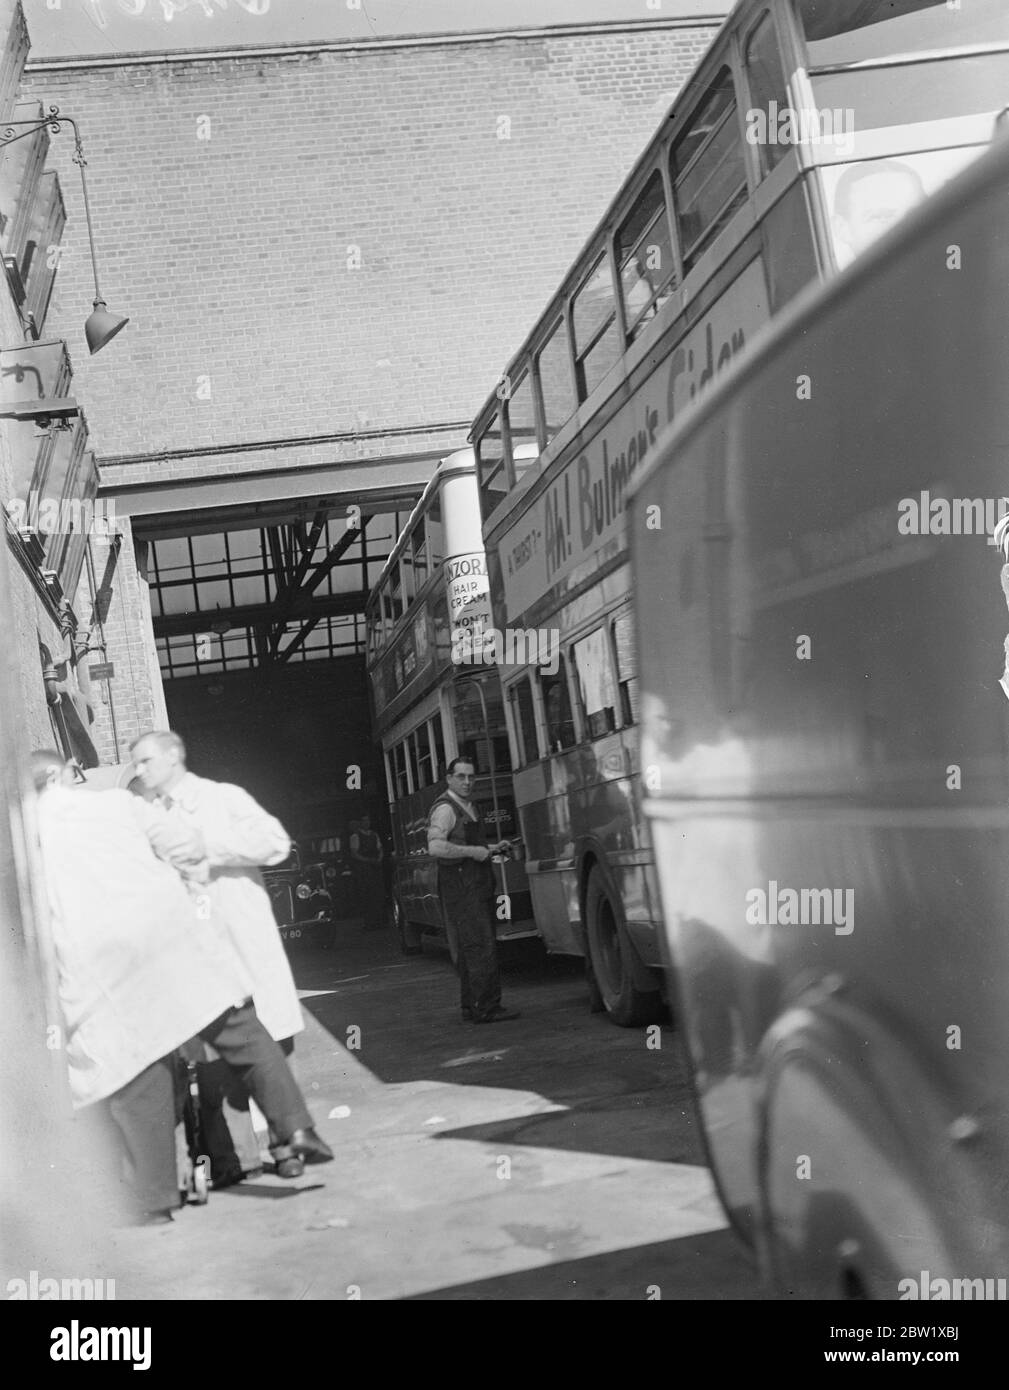 Gli autobus di Londra sono pronti per il ritorno al lavoro. Migliaia di autobus di Londra, inattivi per un mese, sono pronti per il ritorno al lavoro (venerdì) dopo lo sciopero. Spettacoli fotografici, verniciatura di un autobus al garage Camberwell. 27 maggio 1937 Foto Stock